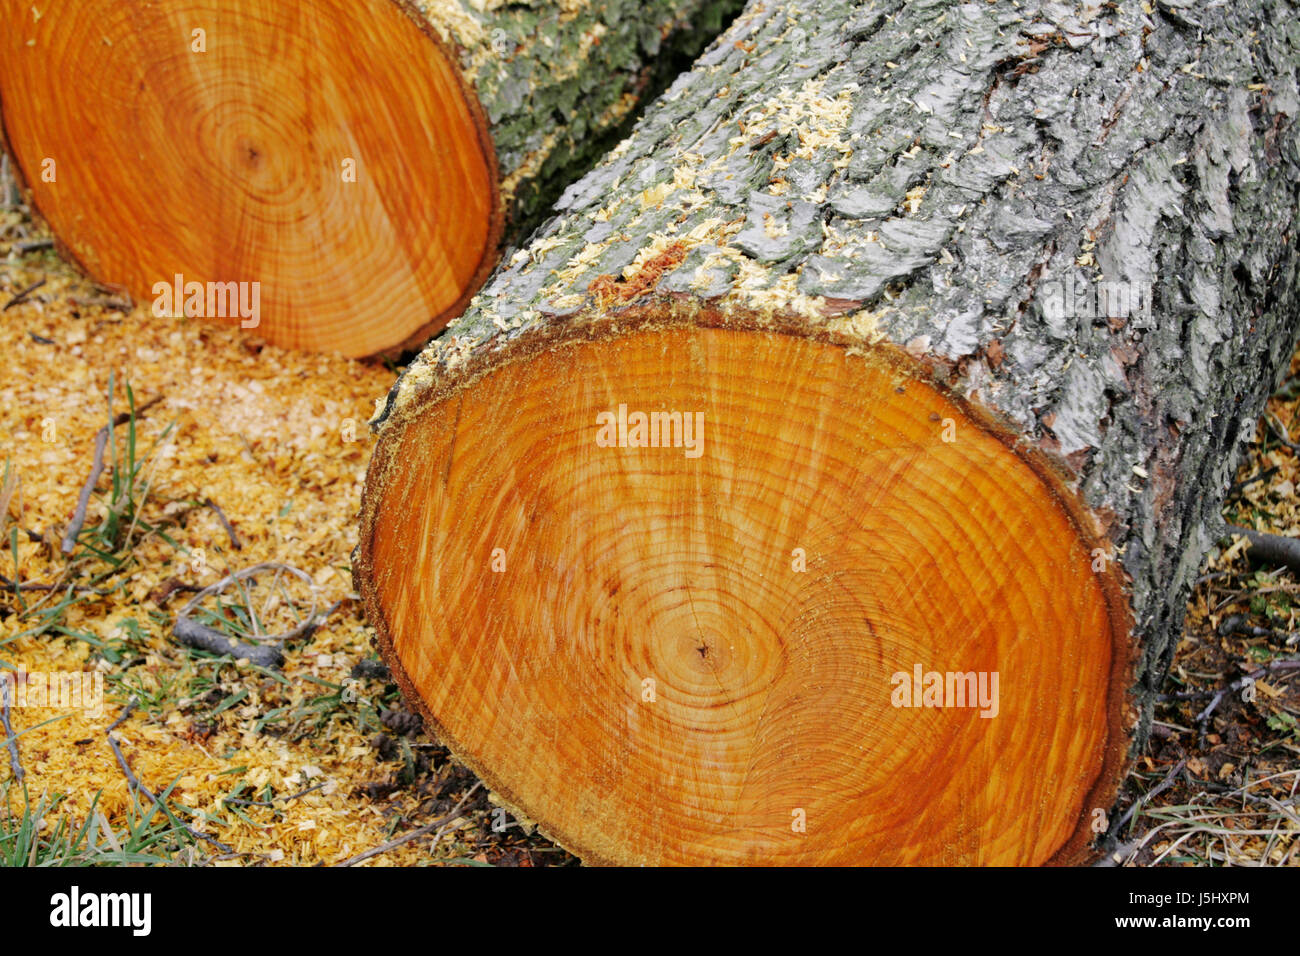 Holzstamm Stämmen geschnitten Querschnitt Hartholz gesägt Jahresringe geschlagen Laub- Stockfoto